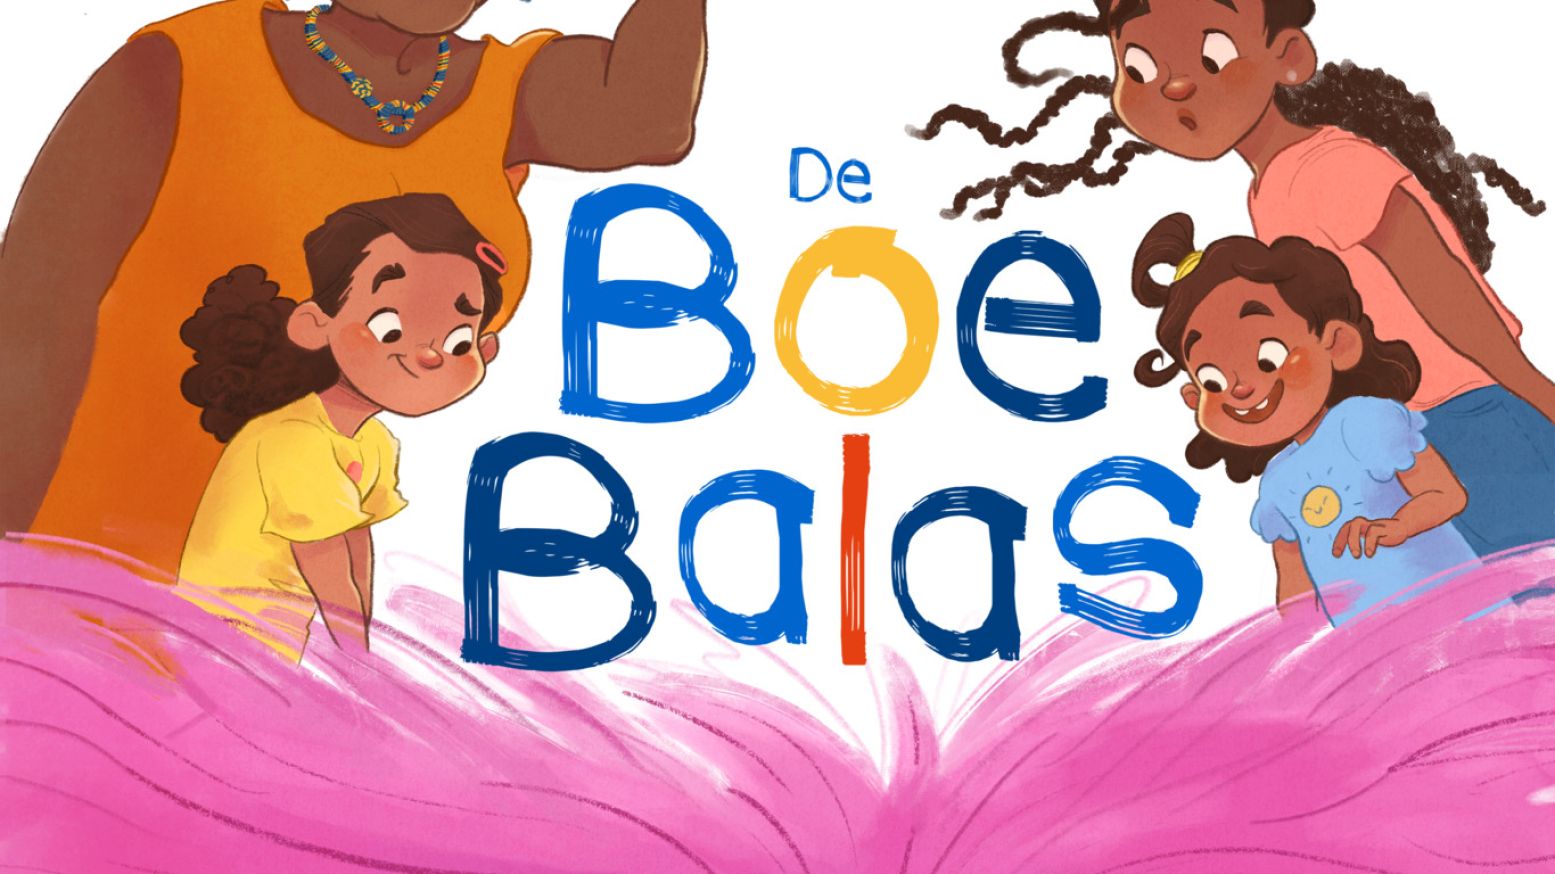 Het boek 'De Boebalas' komt tot leven tijdens de speelexpo Sankofa! Illustratie: Lisa van Winsen